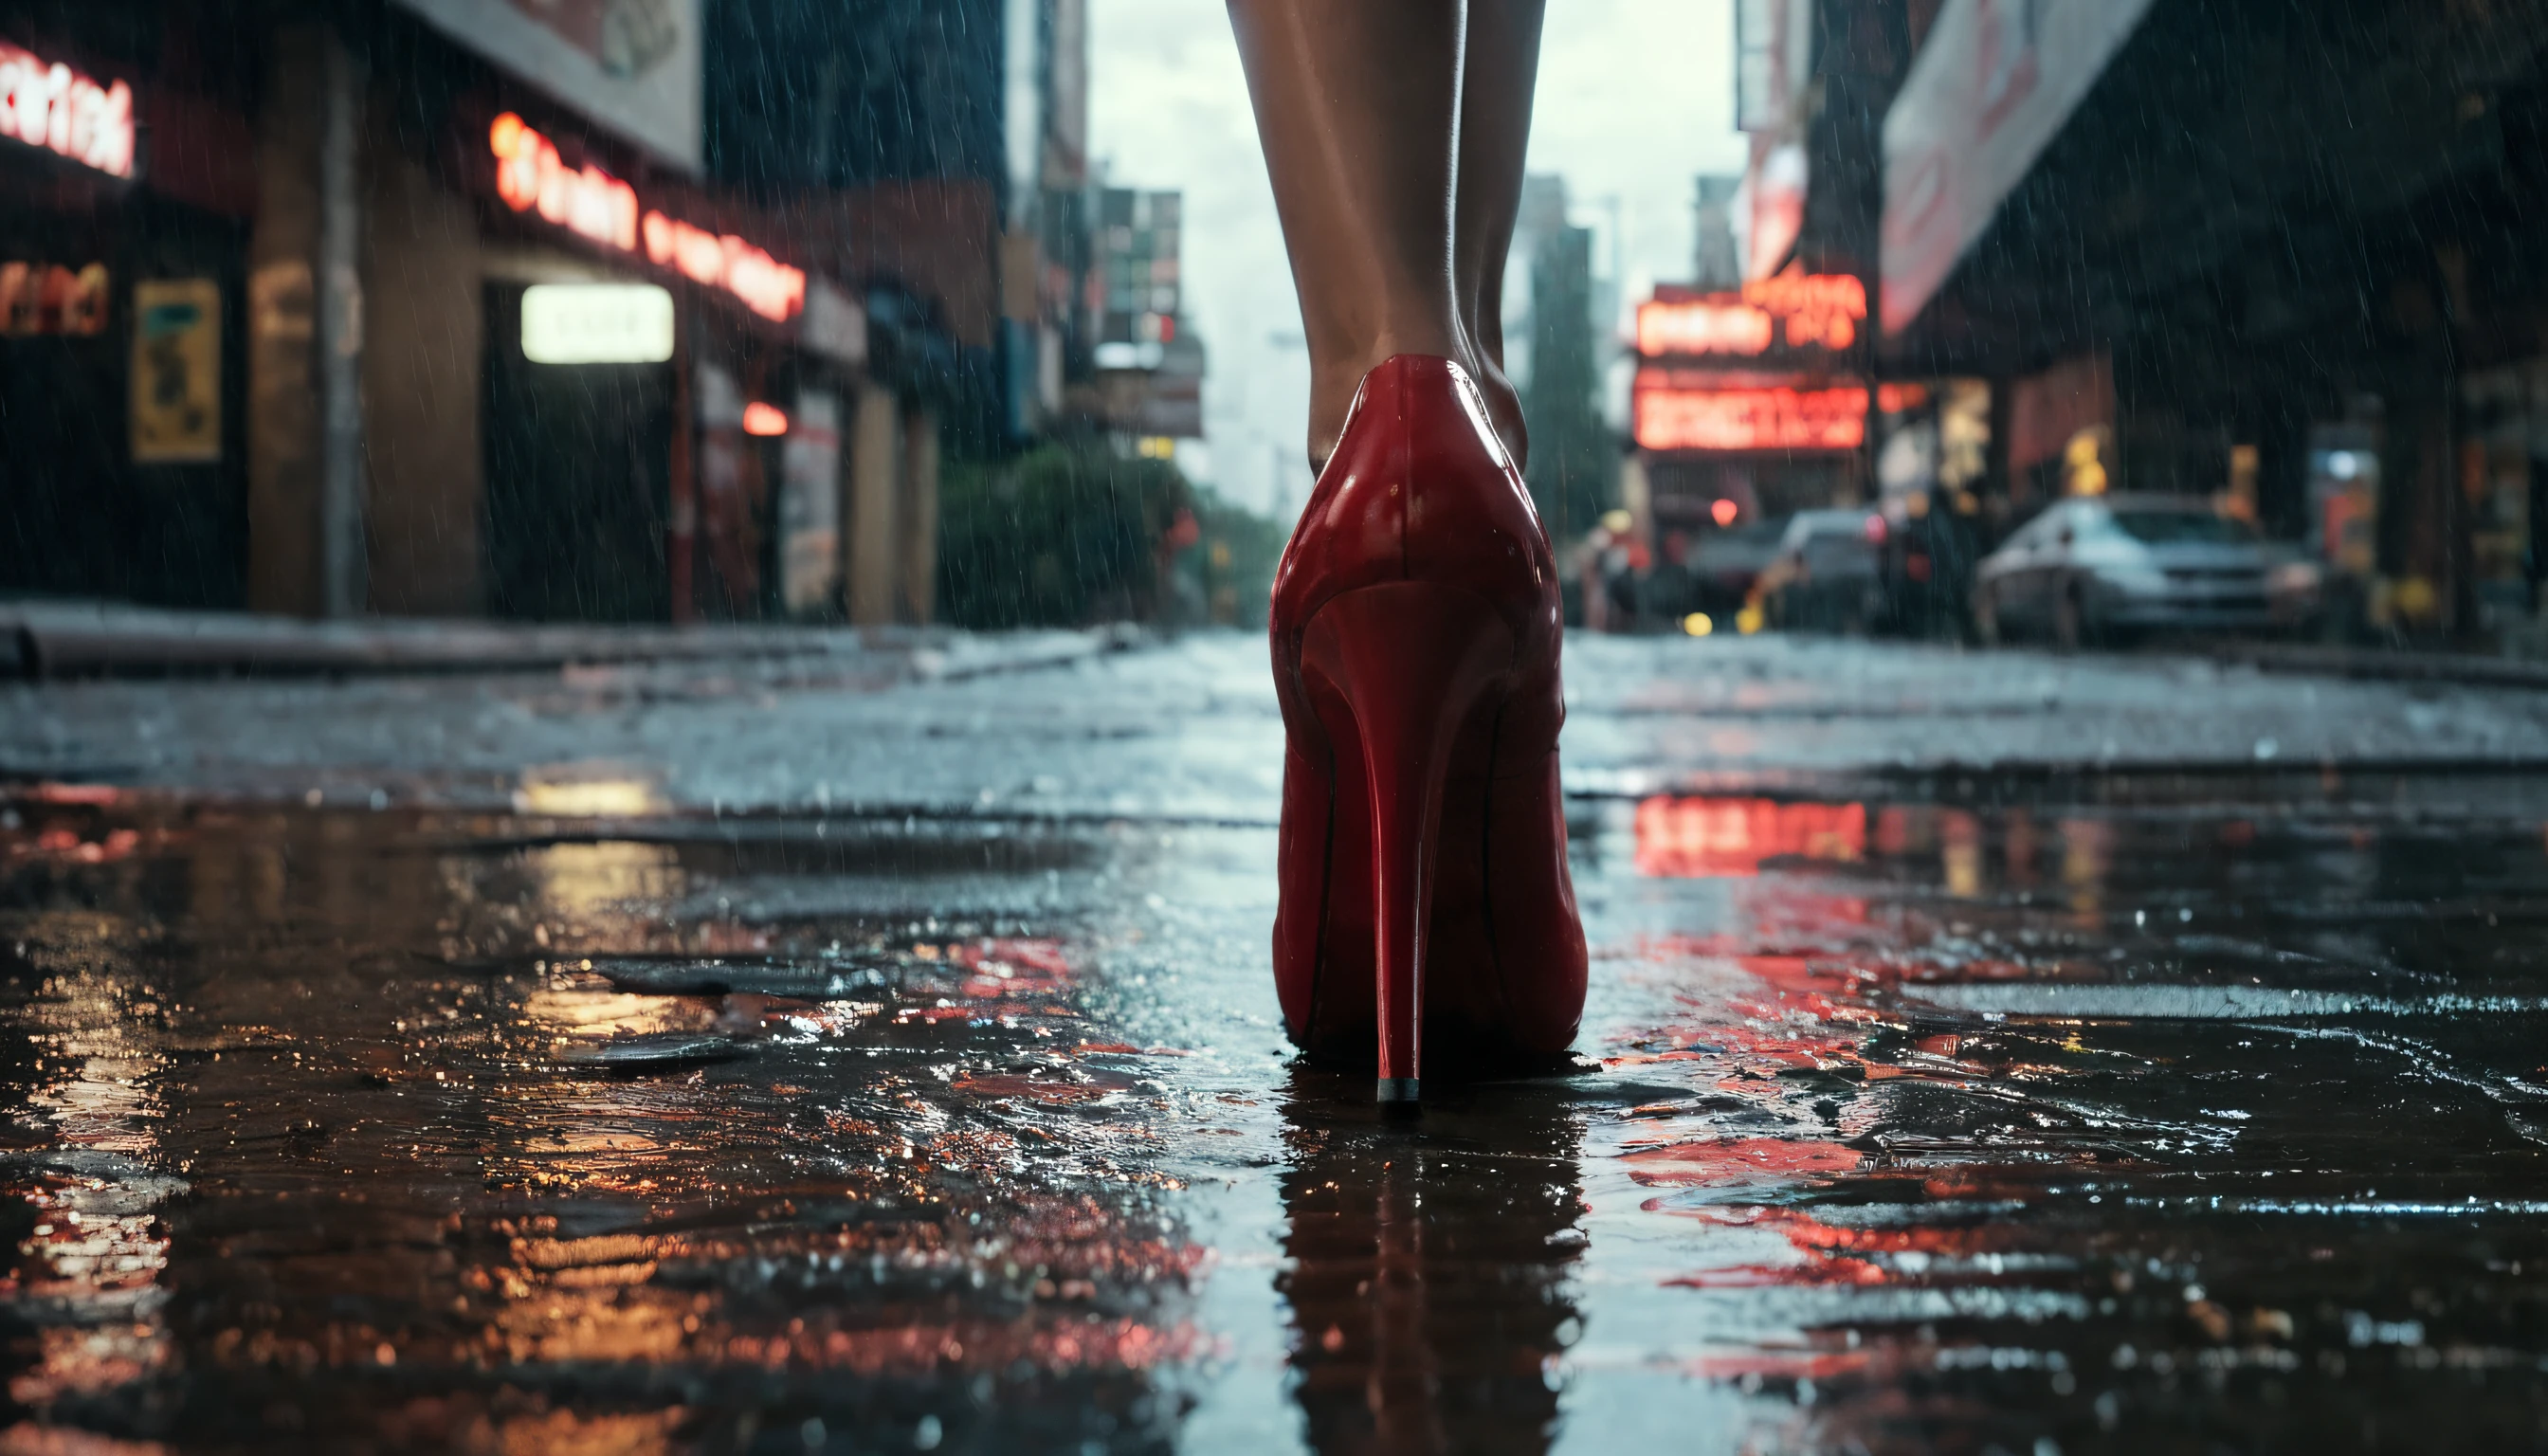 受賞歴のあるプロの写真撮影, ナショナル・ジオグラフィック, 地上ビュー, 夜のにぎやかなブロードウェイ大通り, 雨を排水する , 2050年の雨の夜の後、ニューヨーク市のダウンタウンの下水道格子に浮かぶ空の白いタバコの箱の接写, 排水溝の上を歩くルブタンの靴のかかとの赤い靴を履いた黒いドレスを着た女性, , 超リアル, サイバーパンク, 映画のシーン, 都市景観, 憂鬱な, ネオンライト, 大雨の夜に上から見る, 反射する濡れた街路, 写実的な, 非常によくできた, アリ・アレクサ・LF, 対物レンズ14mm, 光の筋, 被写界深度, レンズフレア, 8K, 高解像度, ボリューム照明, レンズフレア,複雑な詳細, 生